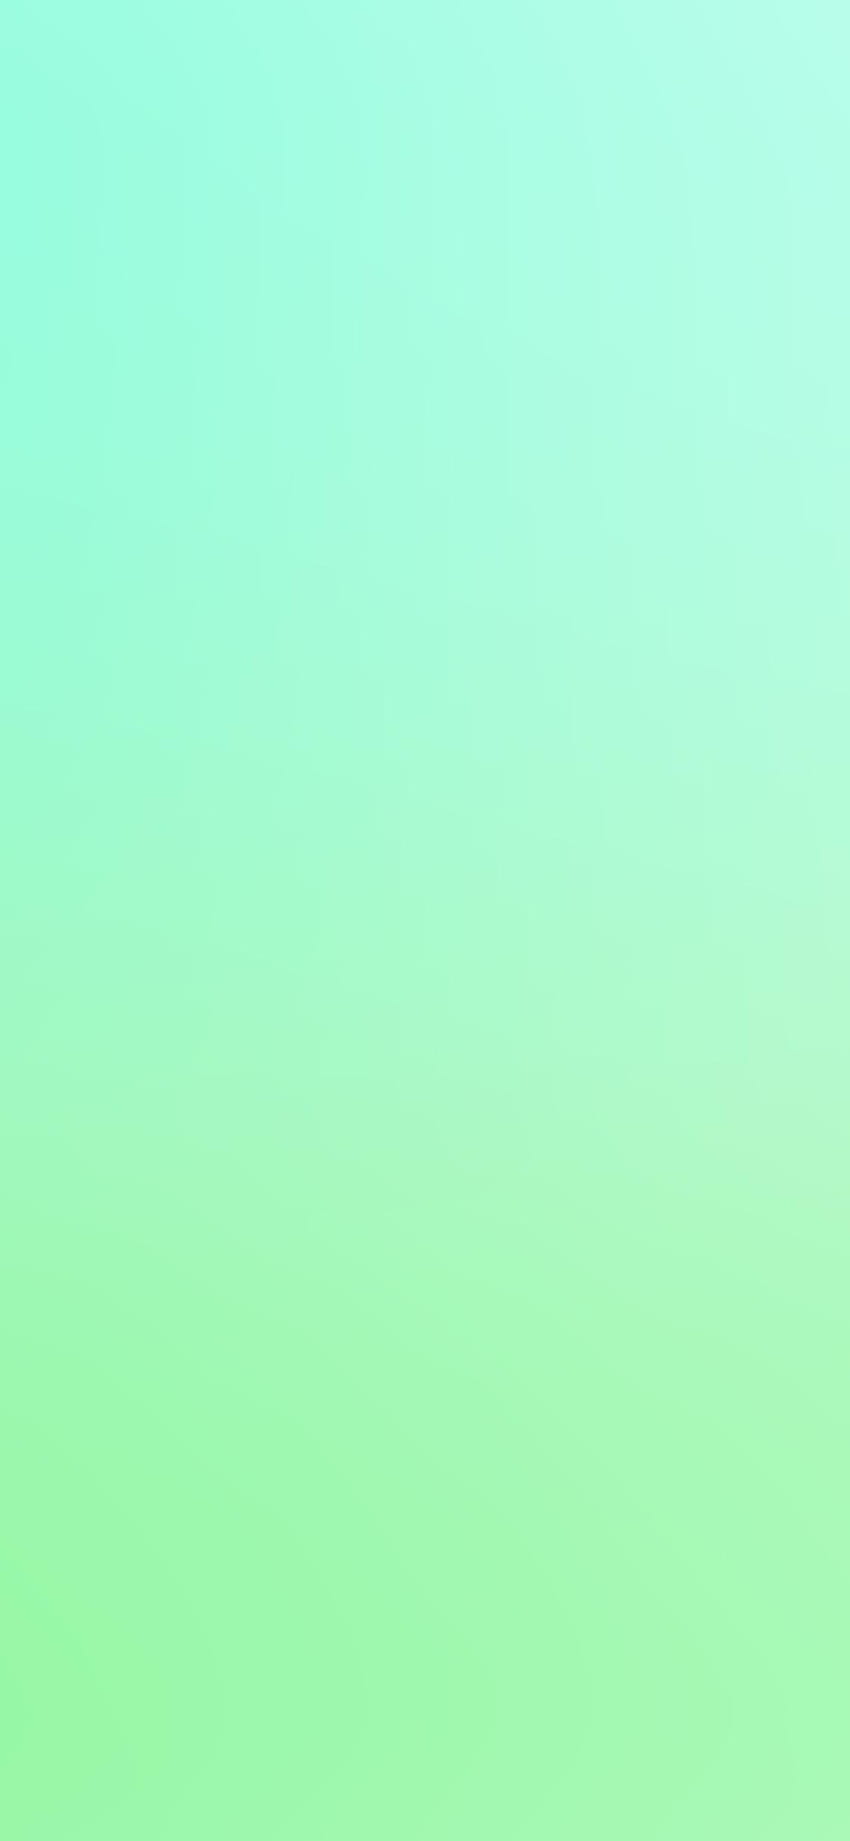 IPhone verde menta, menta y blanco fondo de pantalla del teléfono | Pxfuel